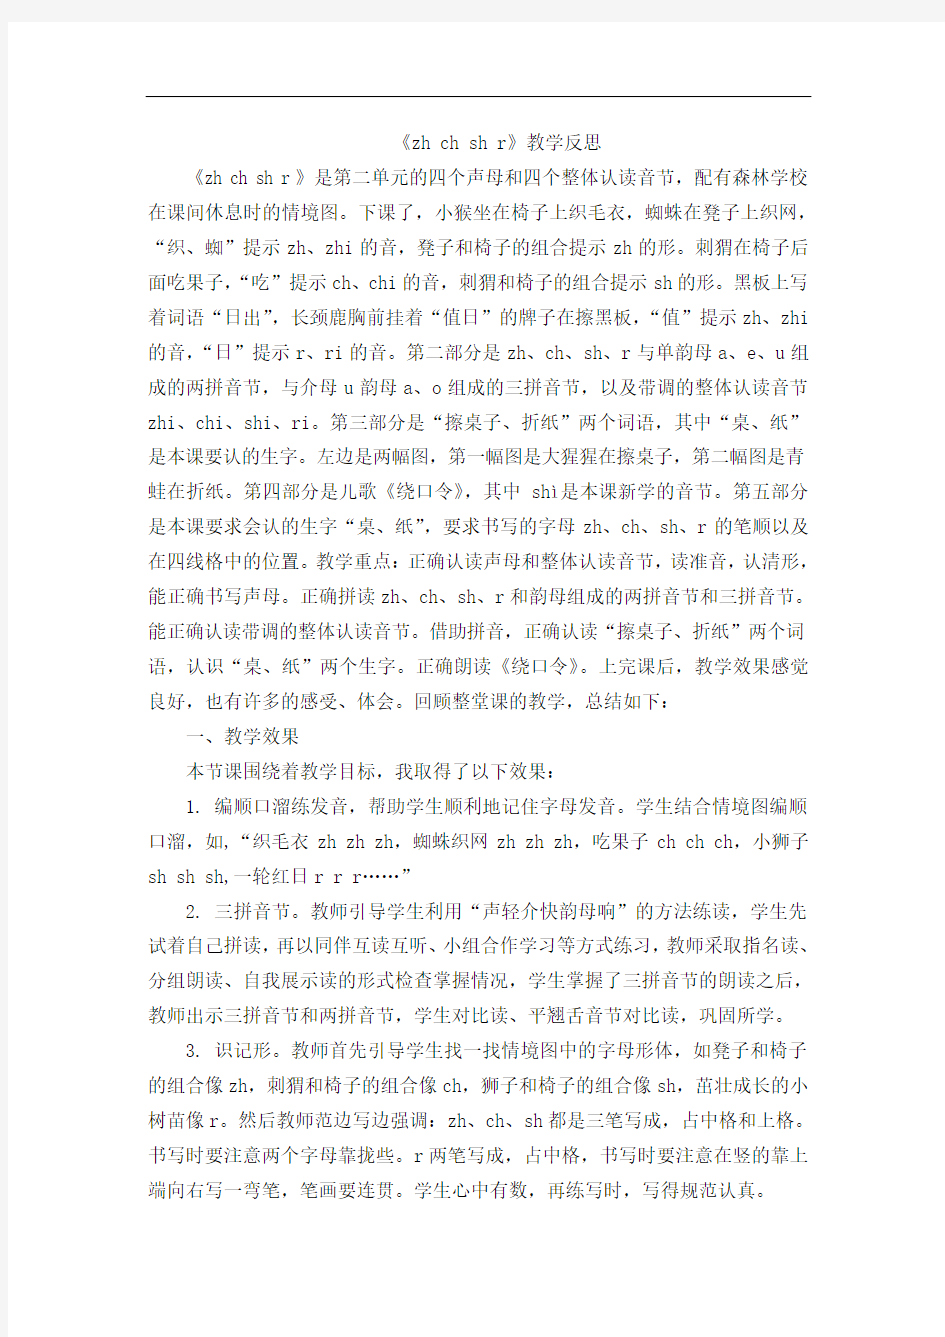 最新版统编语文一年级上汉语拼音8zhchshr教学反思1